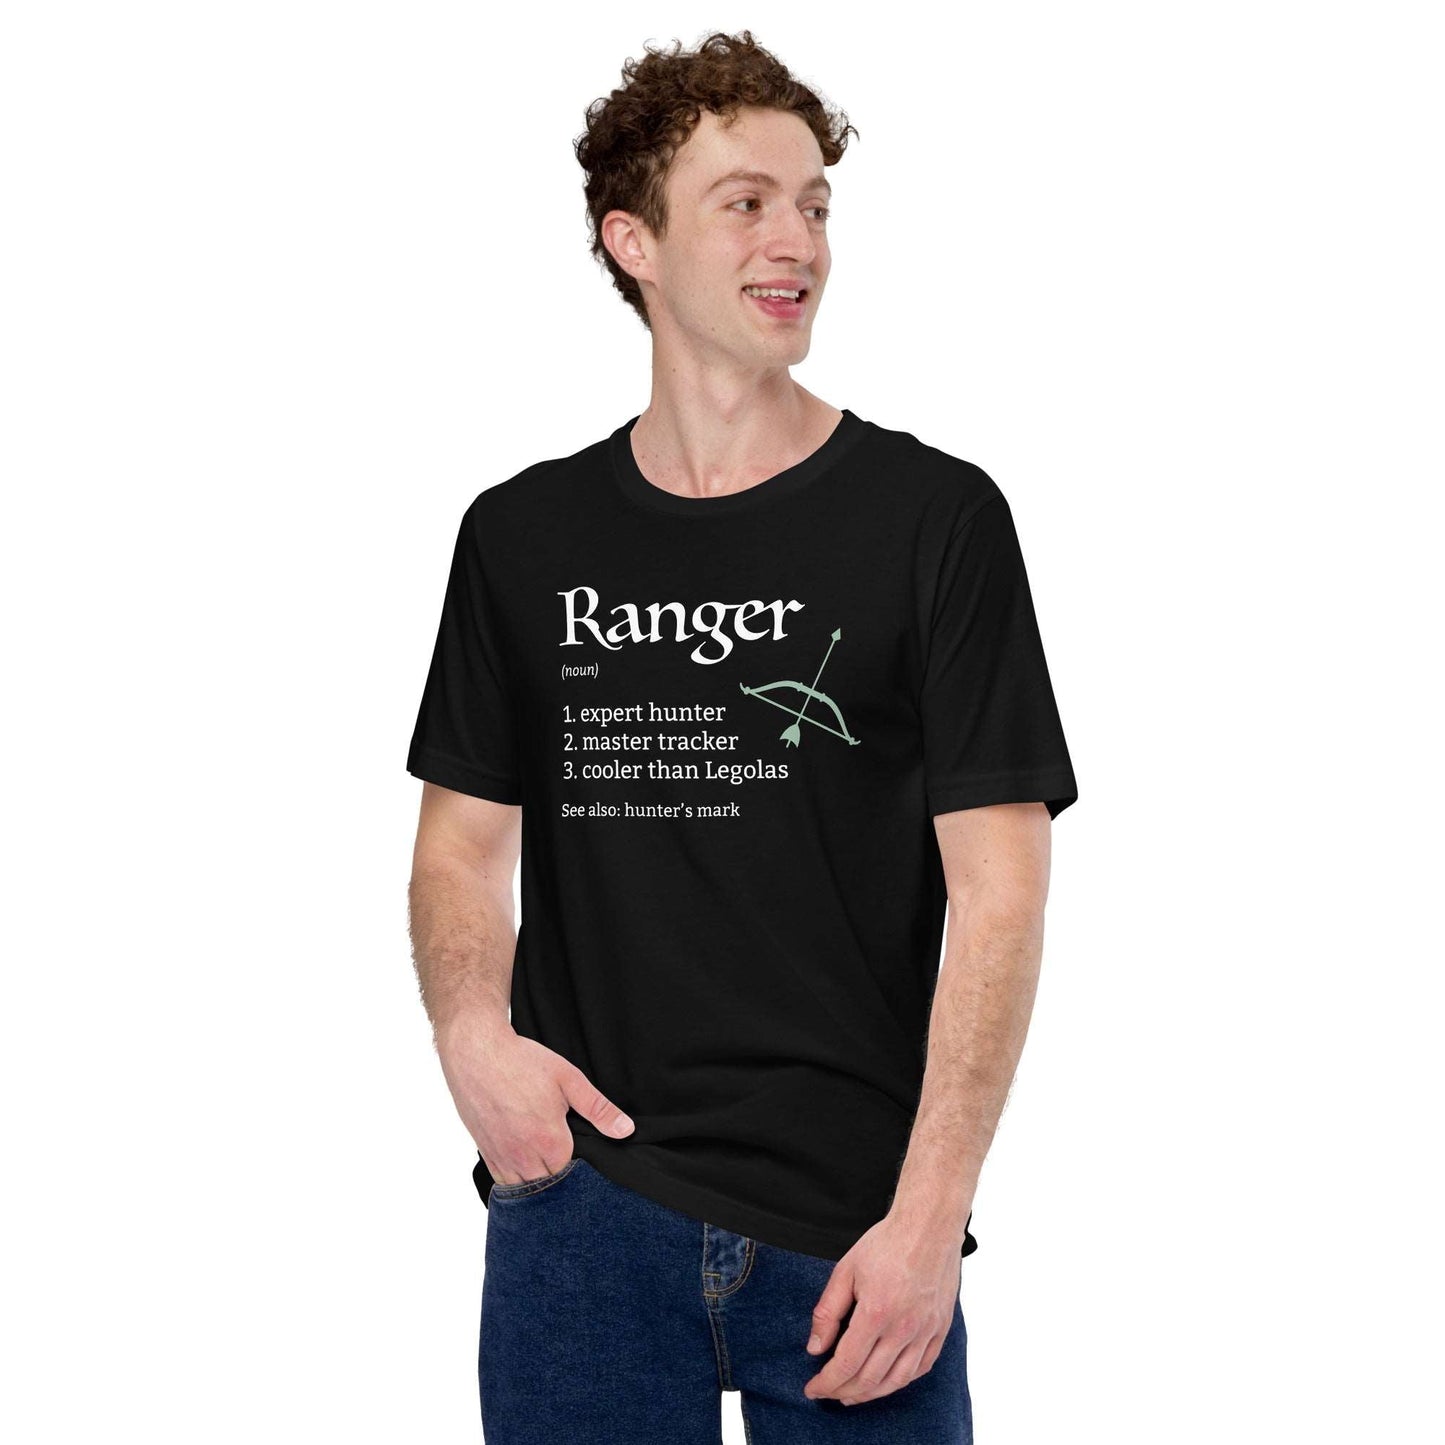 Ranger Class Definition T-Shirt – Funny DnD Definition Tee T-Shirt